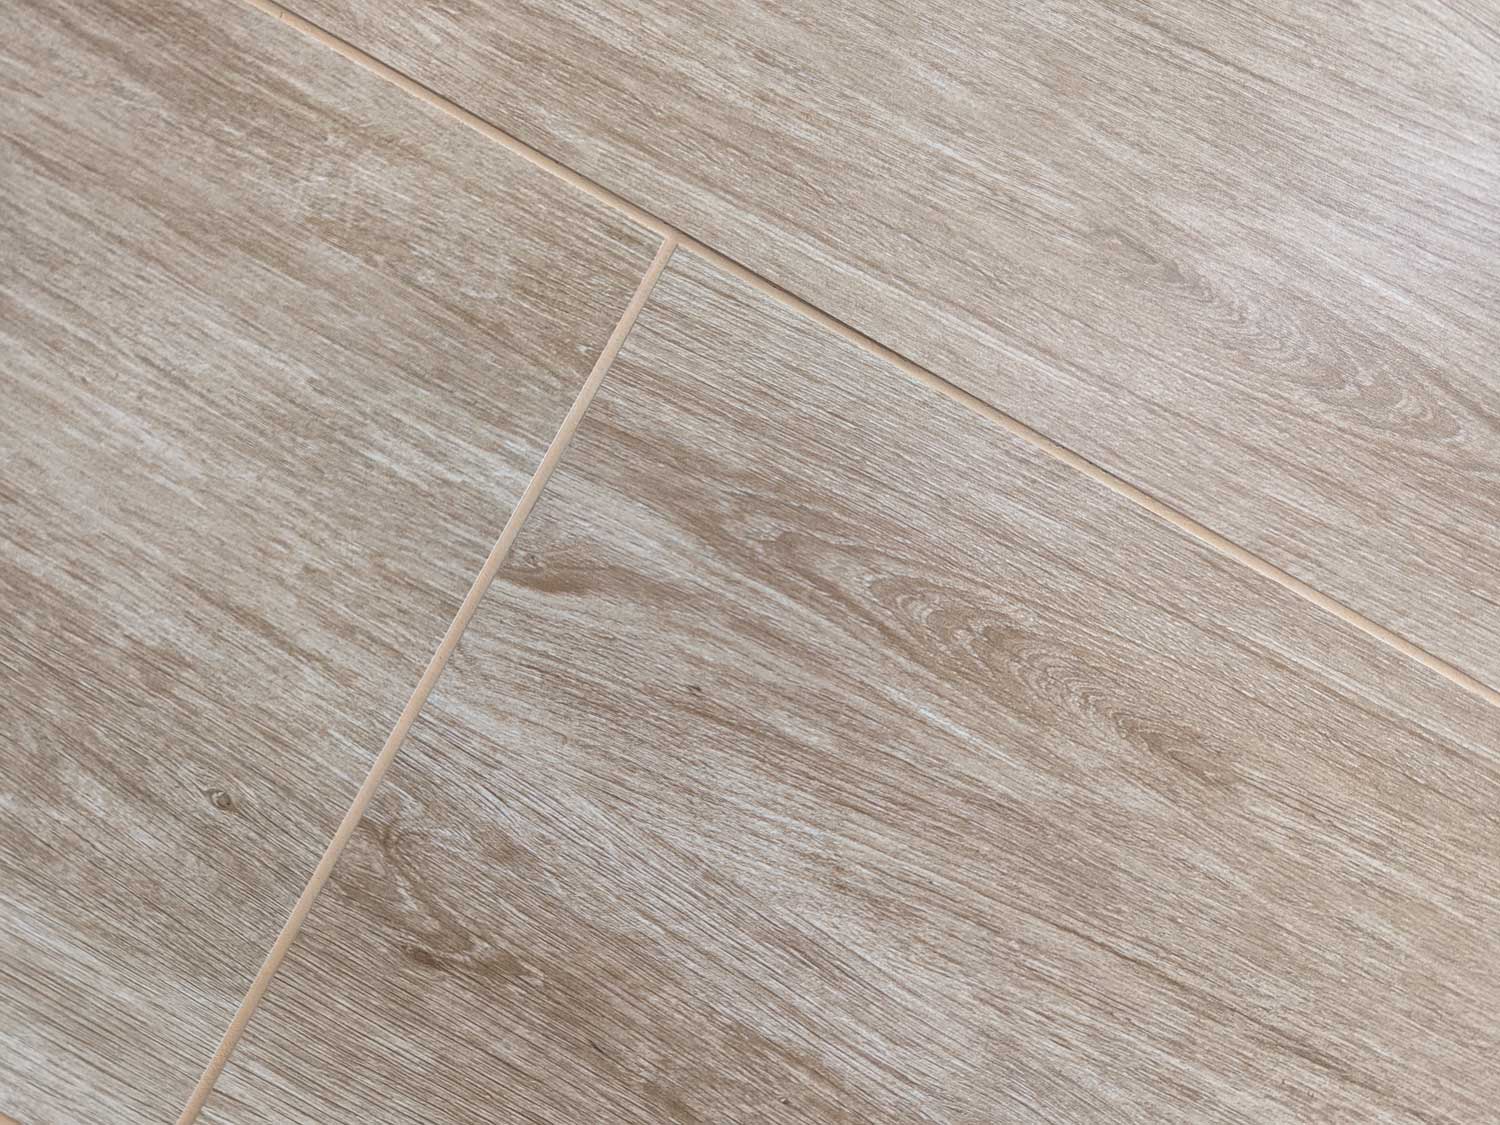 Petrus Oak Ceramic Floor Tile Close Up